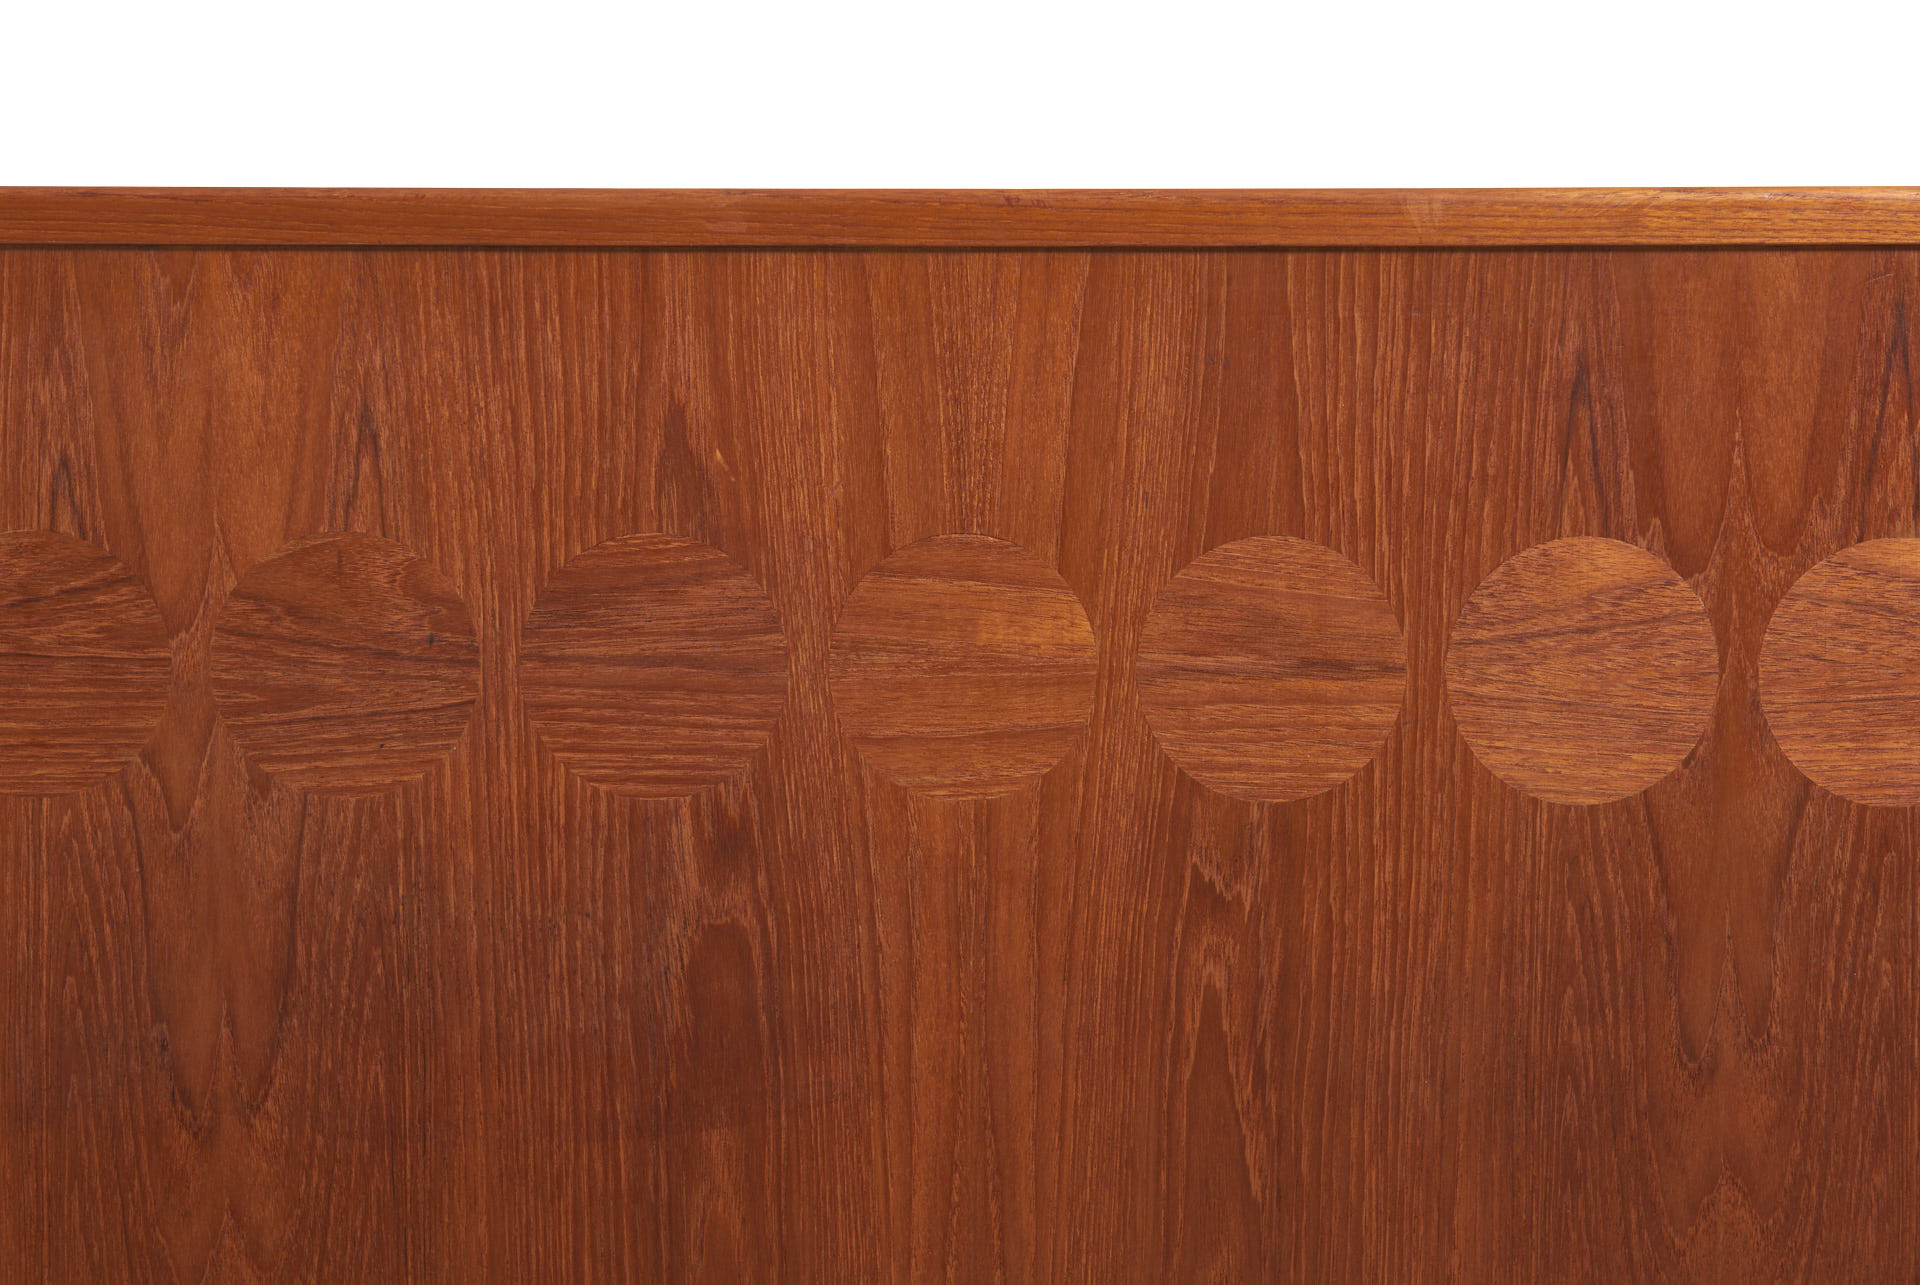 modestfurniture-vintage-2672-johannes-andersen-bar-cabinet-sk661-bar-stools16